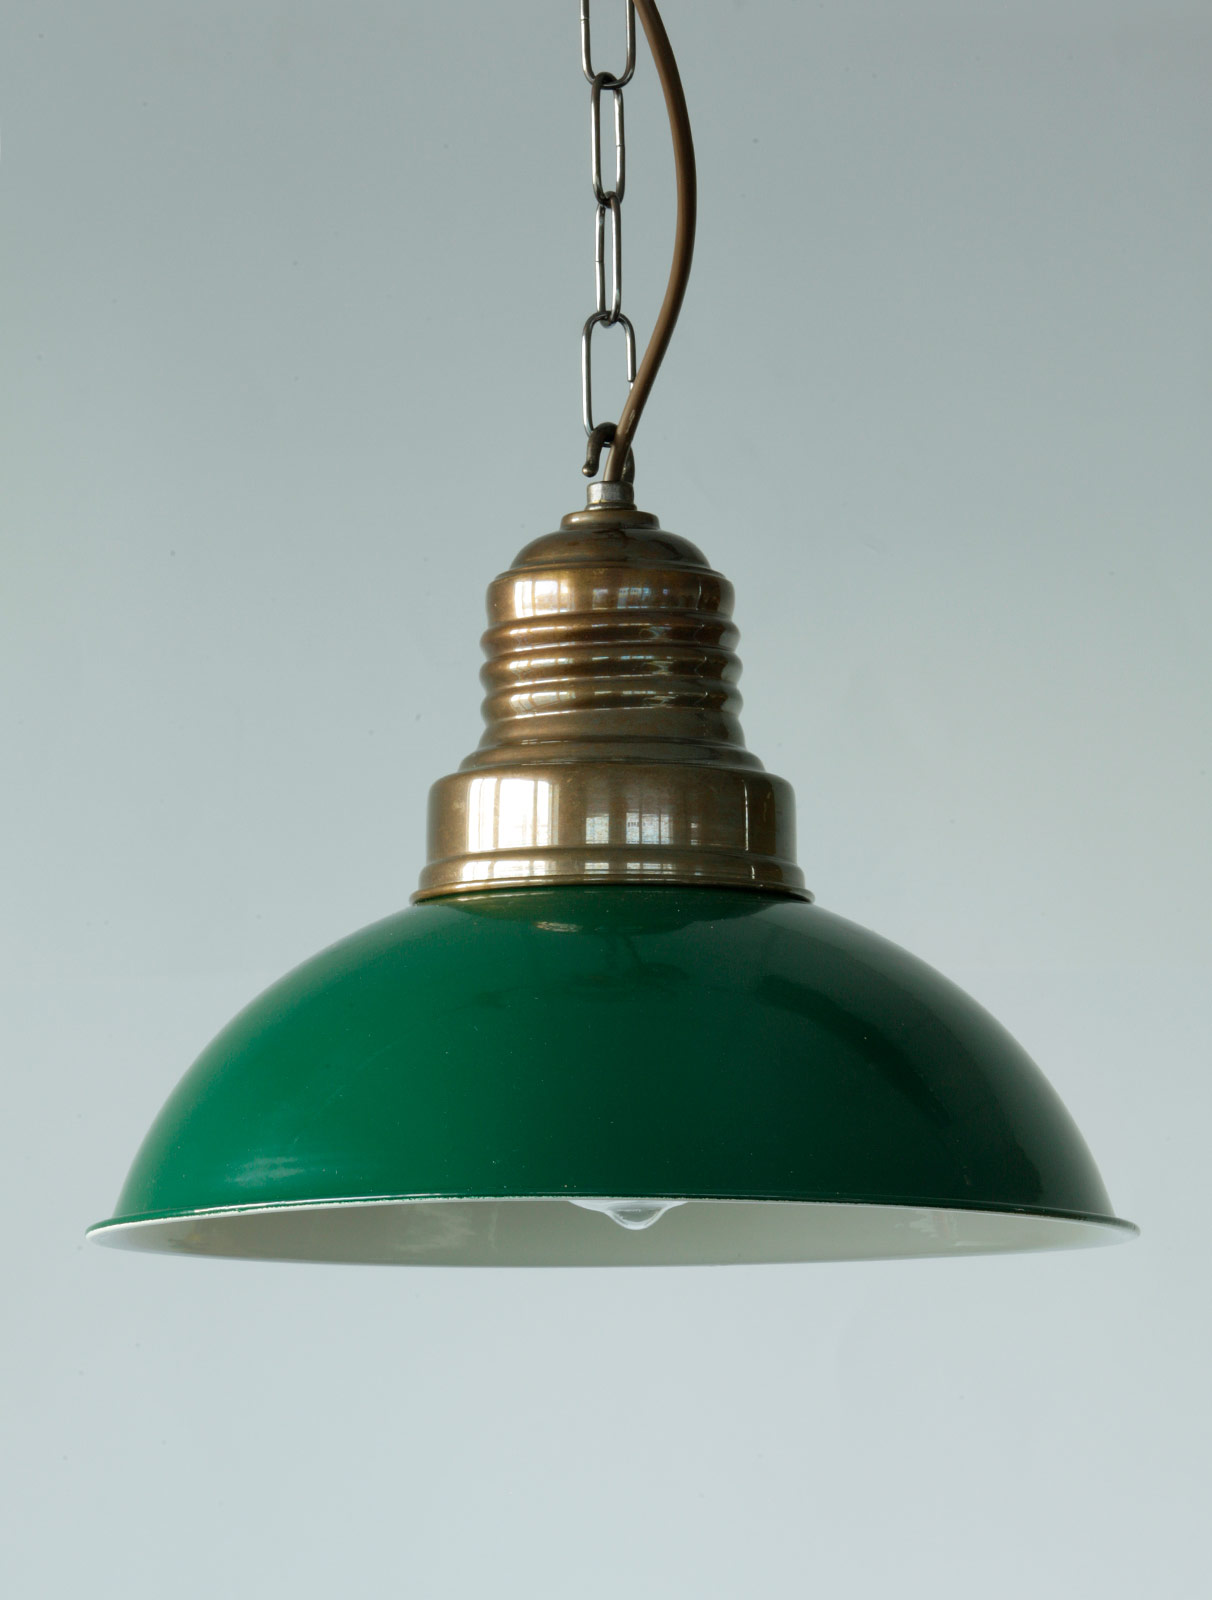 Nostalgische Fabriklampe mit Kettenaufhängung: Fabriklampe mit Ketten-Aufhängung, Schirm in British Racing Green lackiert